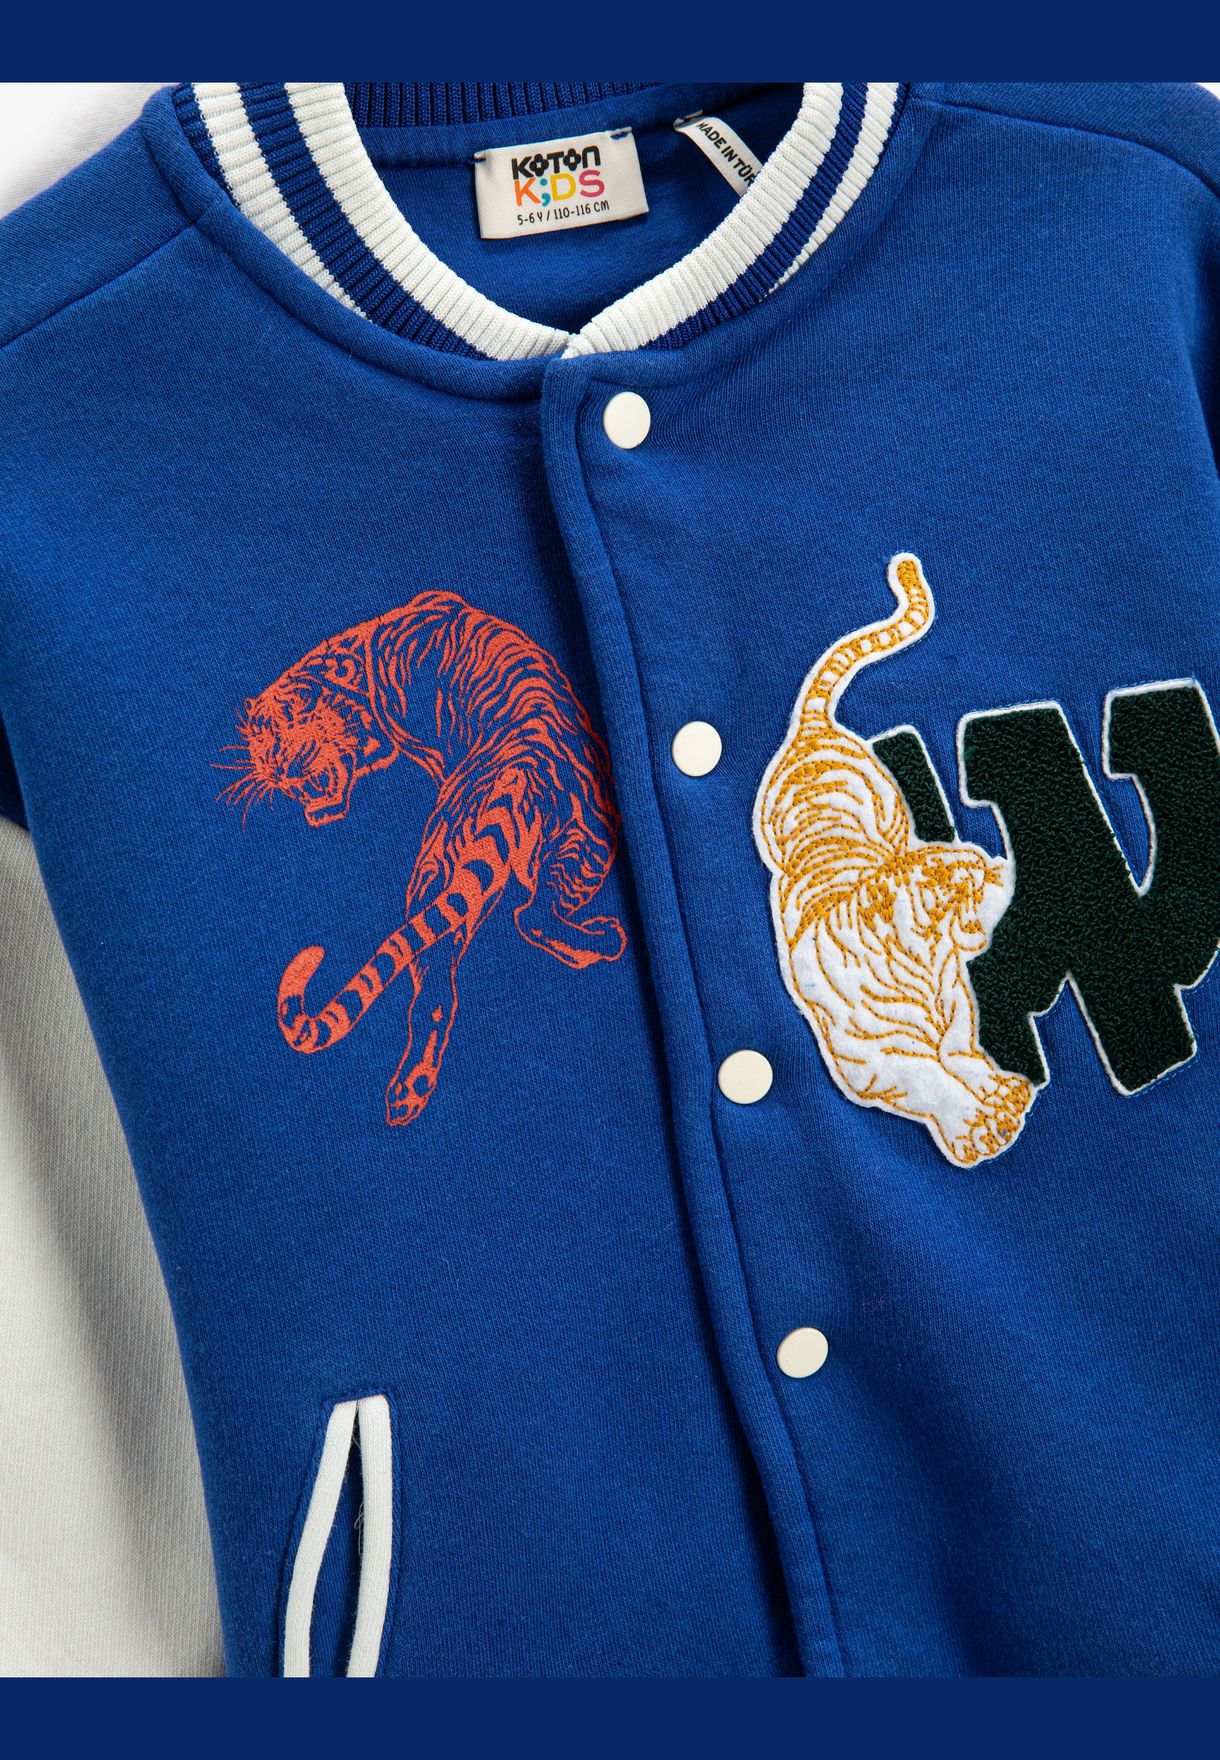 Varsity Jacket Back and Front Tiger Printed Brushed Interior Pockets Snap Closure